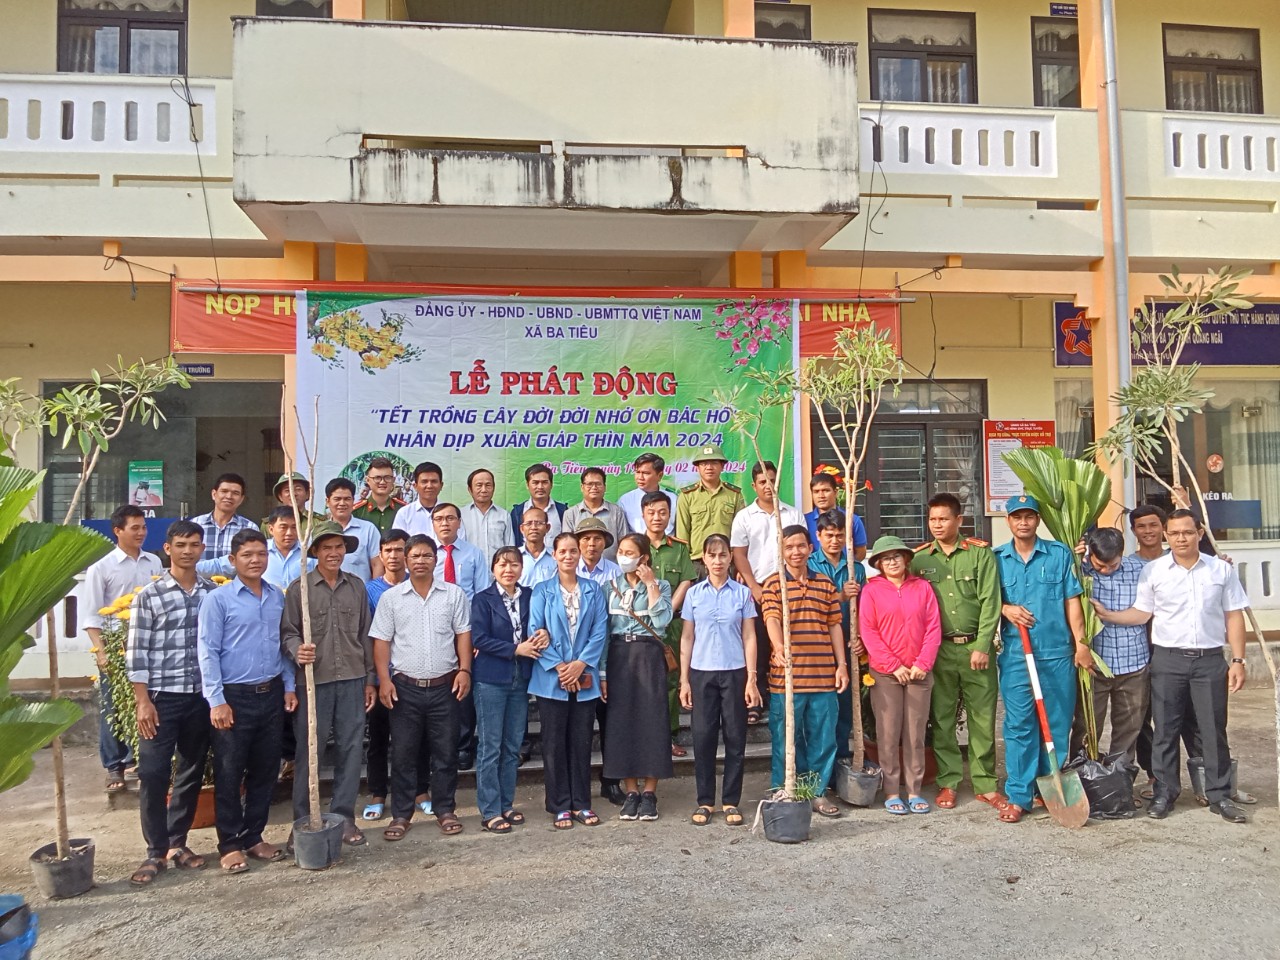 UBND xã Ba Tiêu tổ chức Lễ phát động phong trào “Tết trồng cây đời đời nhớ ơn Bác Hồ” nhân dịp Xuân Giáp Thìn năm 2024